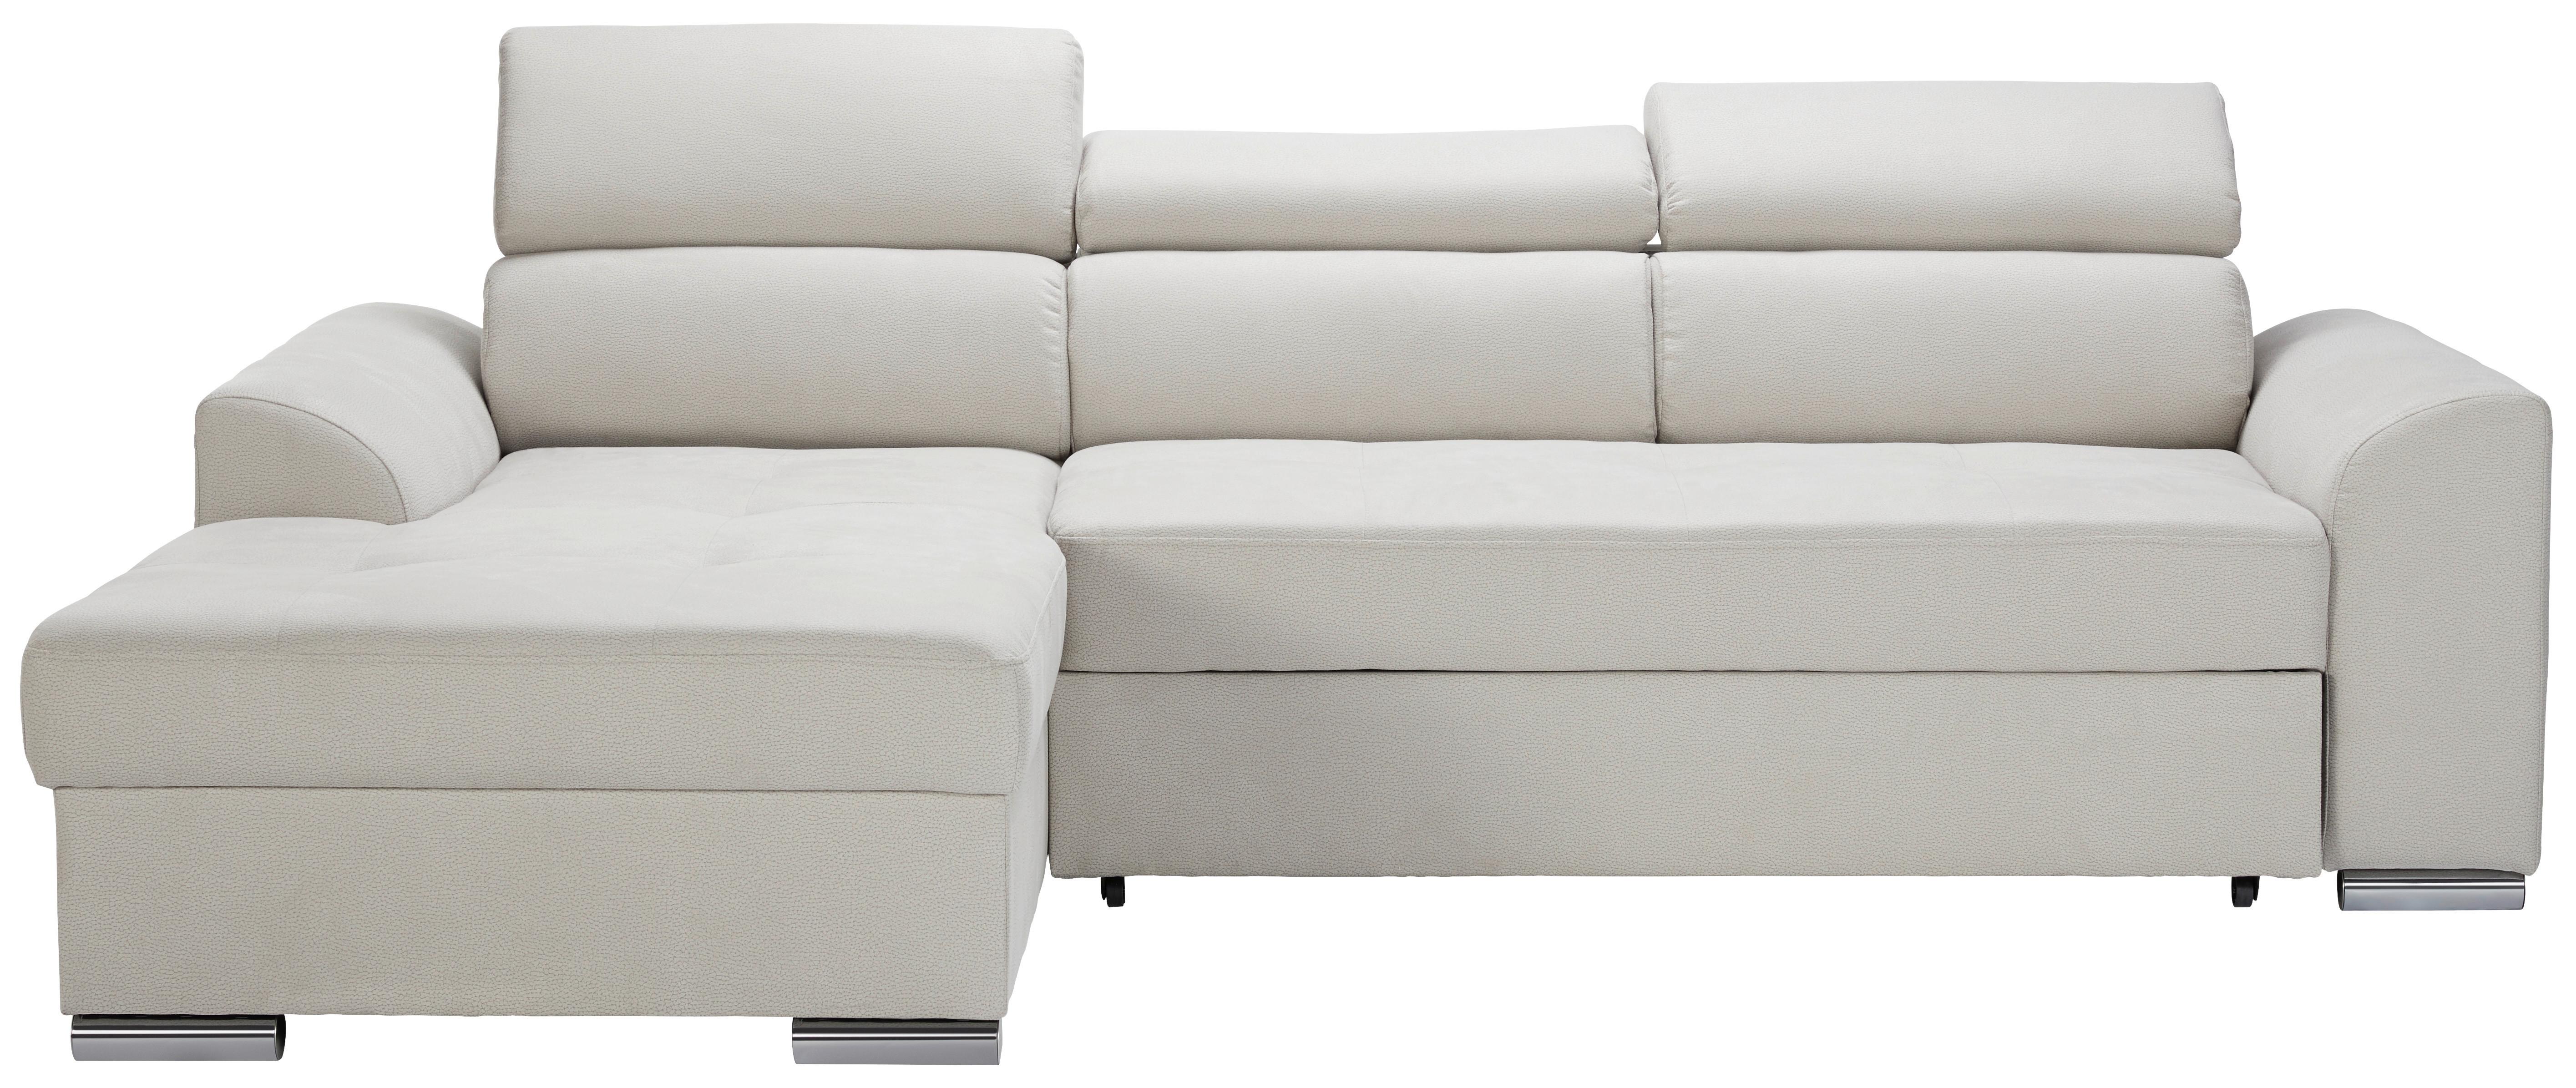 Sedežna Garnitura Abba, Z Ležiščem - bež, Moderno, tekstil (246/167cm) - Modern Living